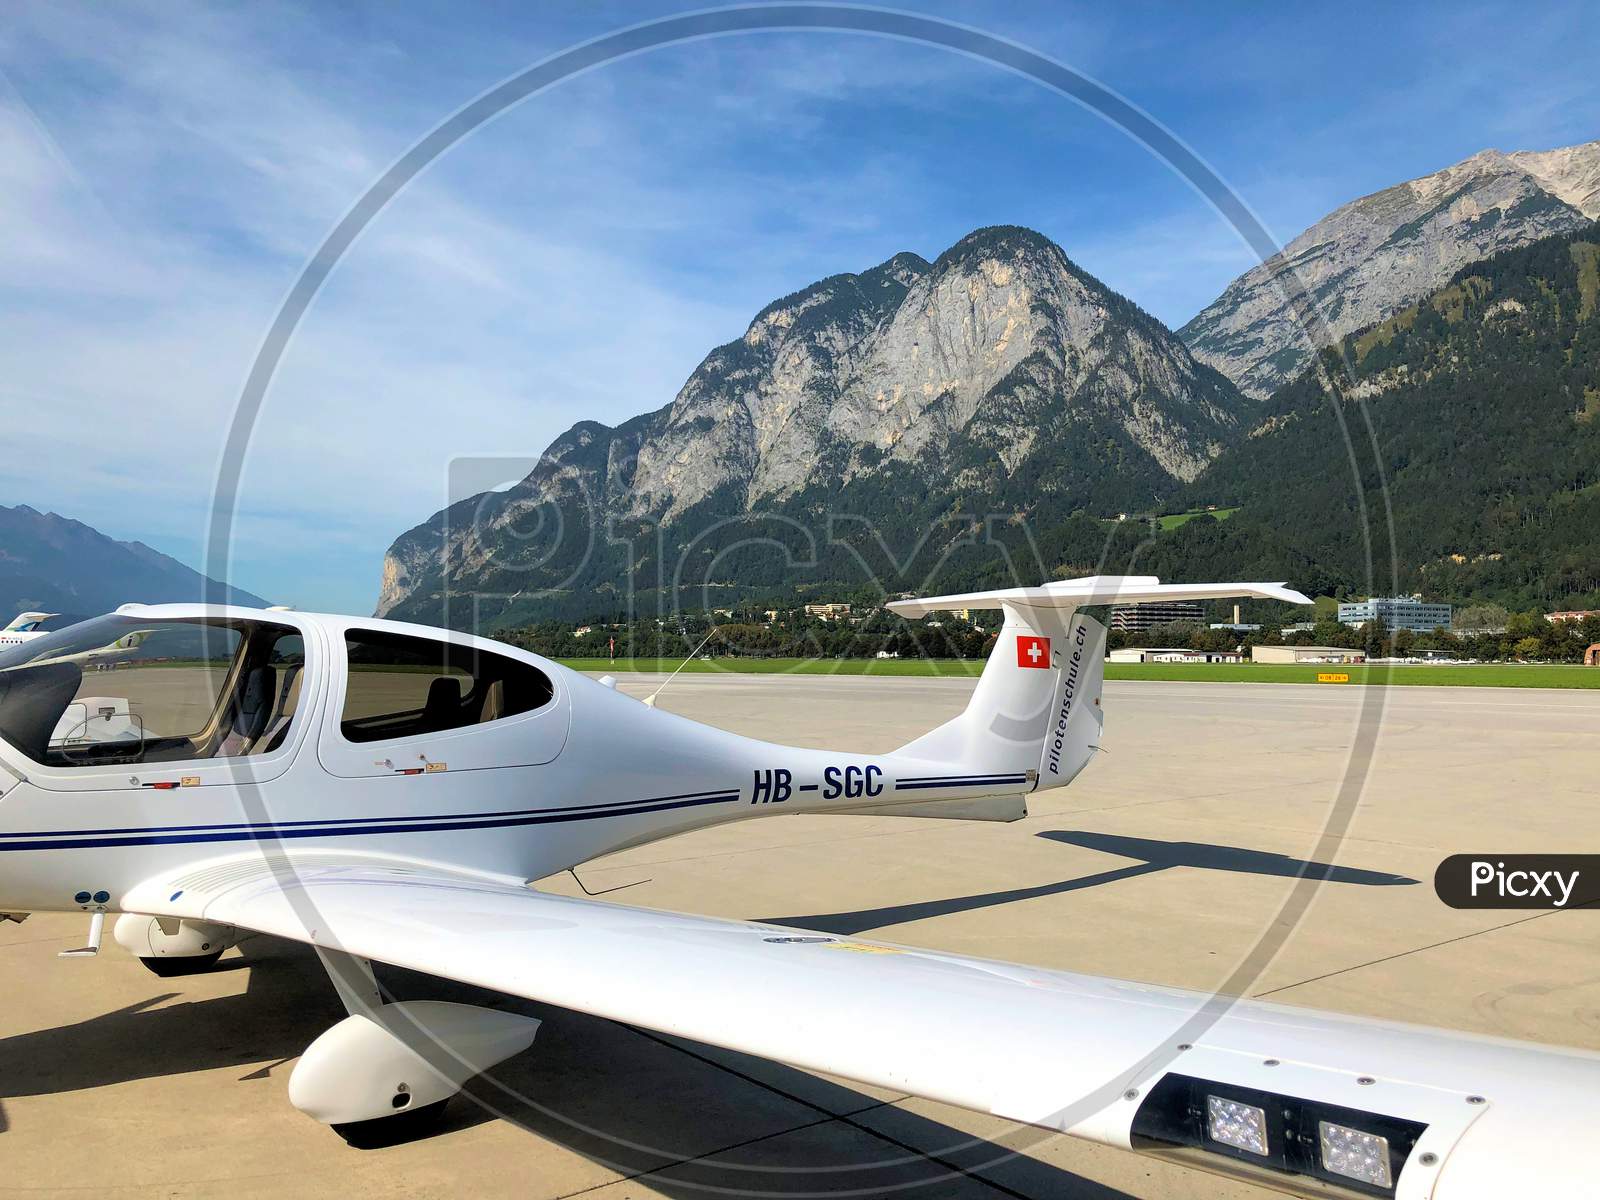 Diamond Da-40 At The Airport In Innsbruck In Austria 20.9.2019